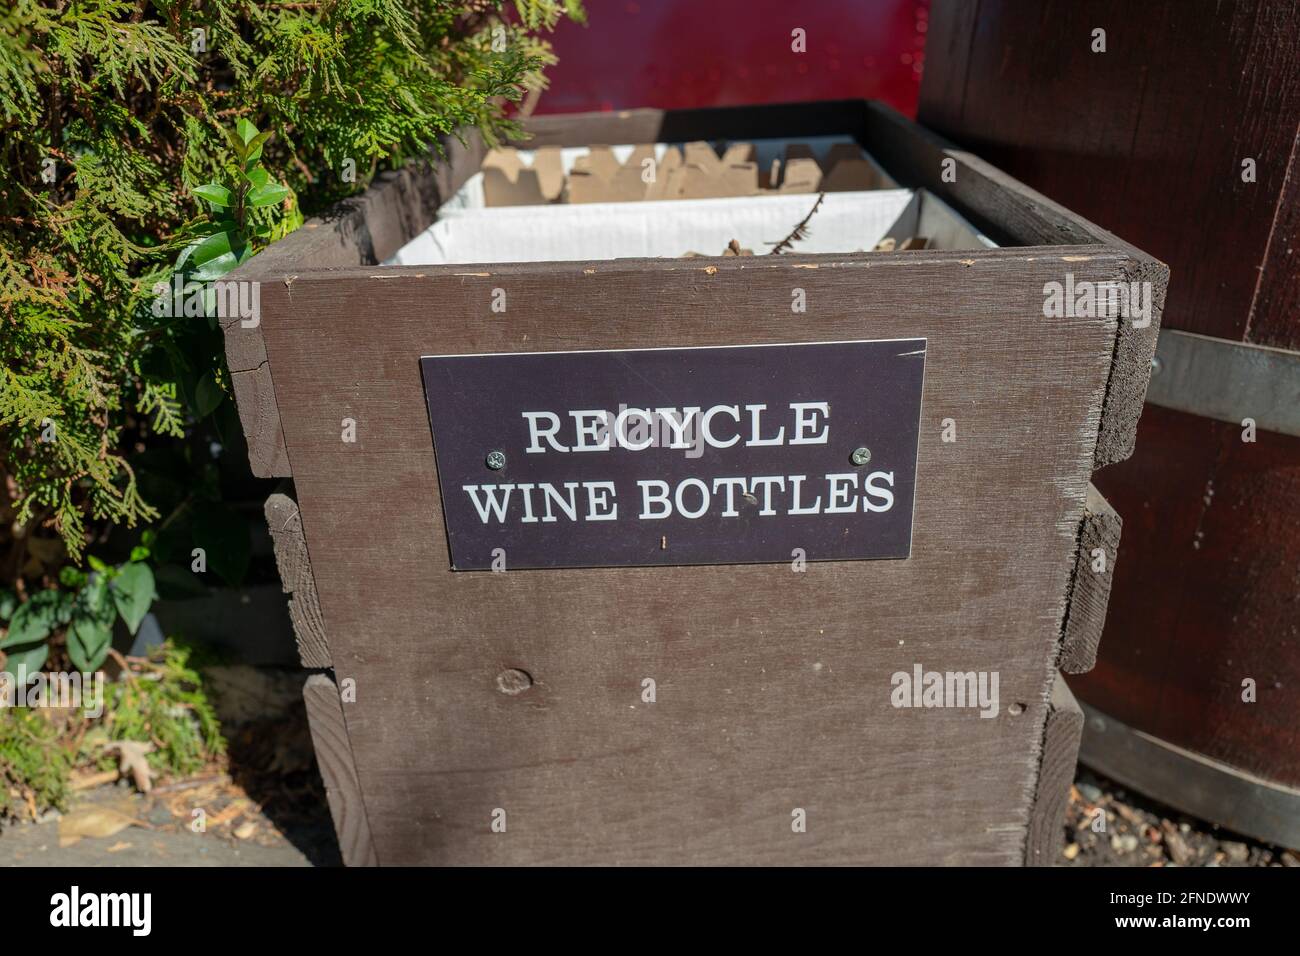 Primo piano di un bidone di riciclaggio con un cartello con la scritta "Recycle Wine Bottles" su di esso presso la V. Sattui Winery di St Helena, California, 6 febbraio 2021. () Foto Stock